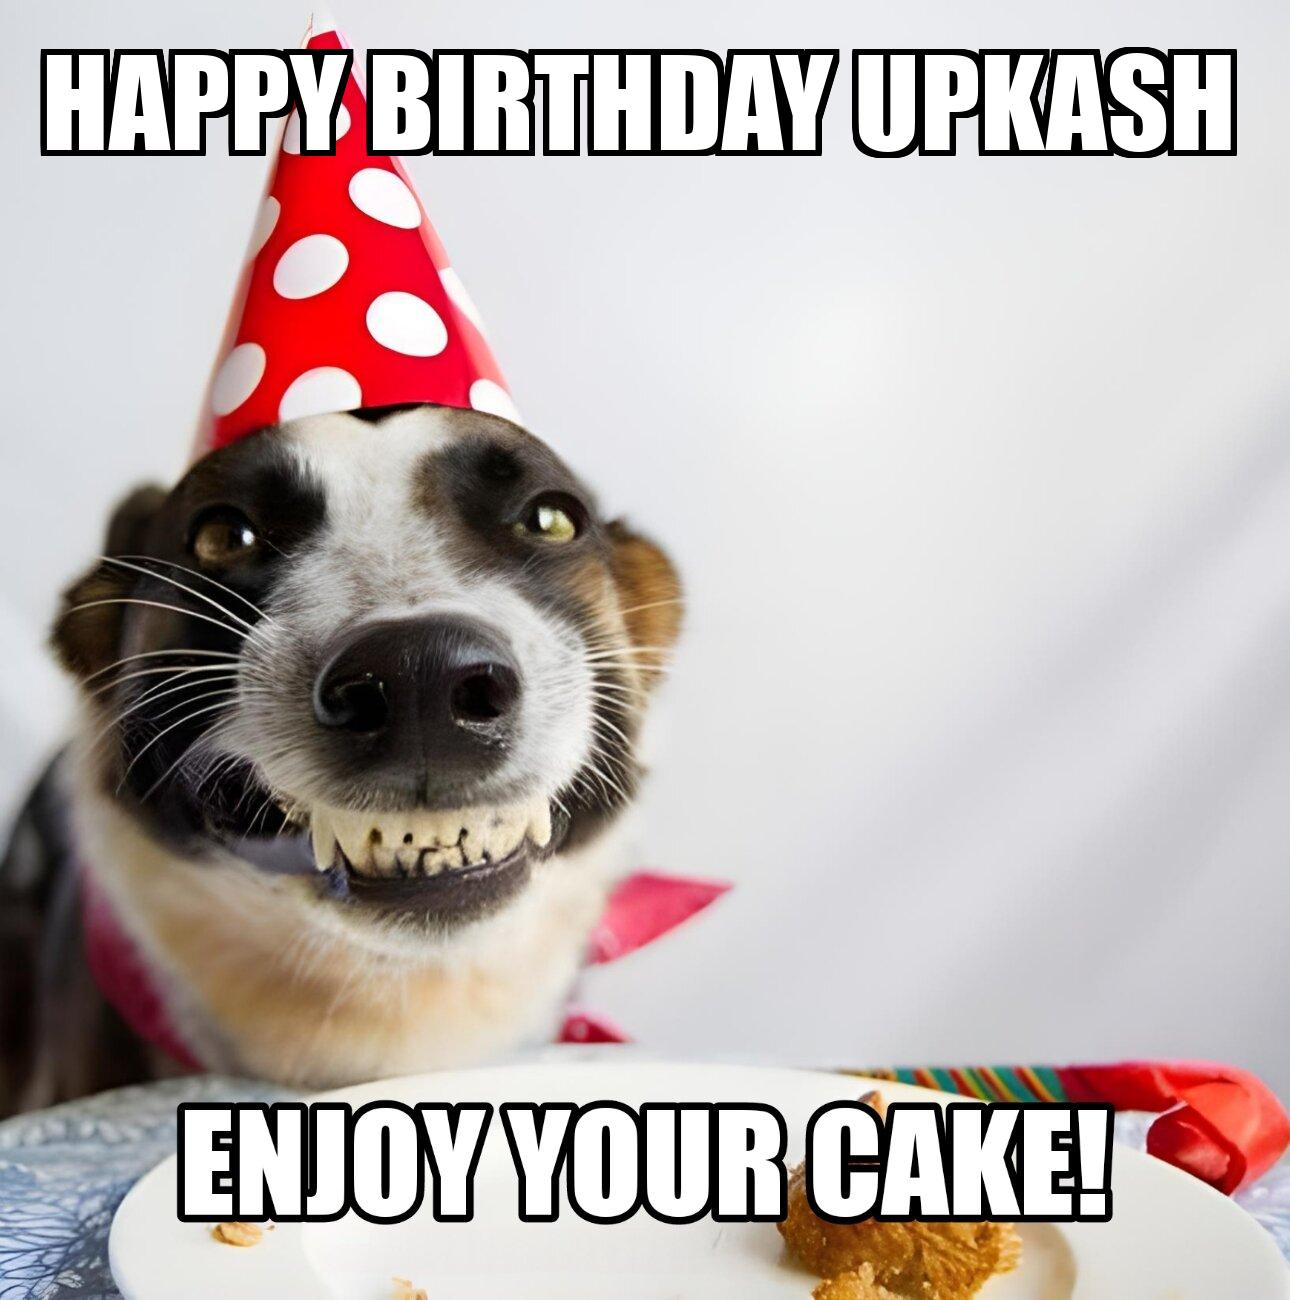 Happy Birthday Upkash Enjoy Your Cake Dog Meme